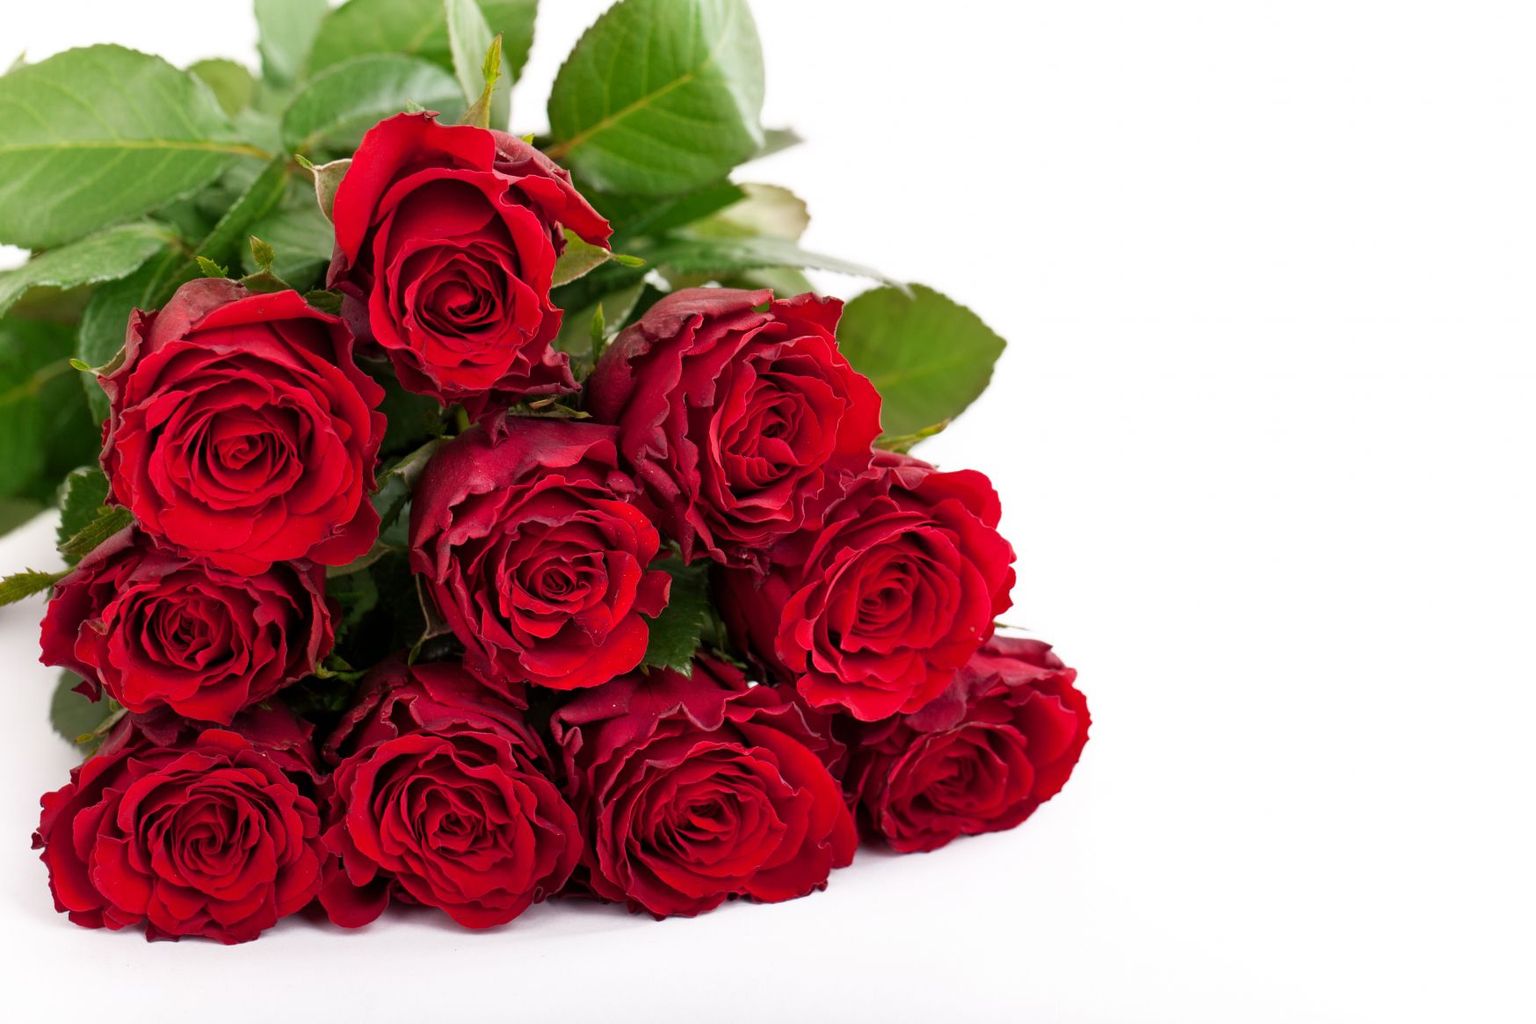 Punased roosid on küll väga klassikalised, aga tihti igavad.